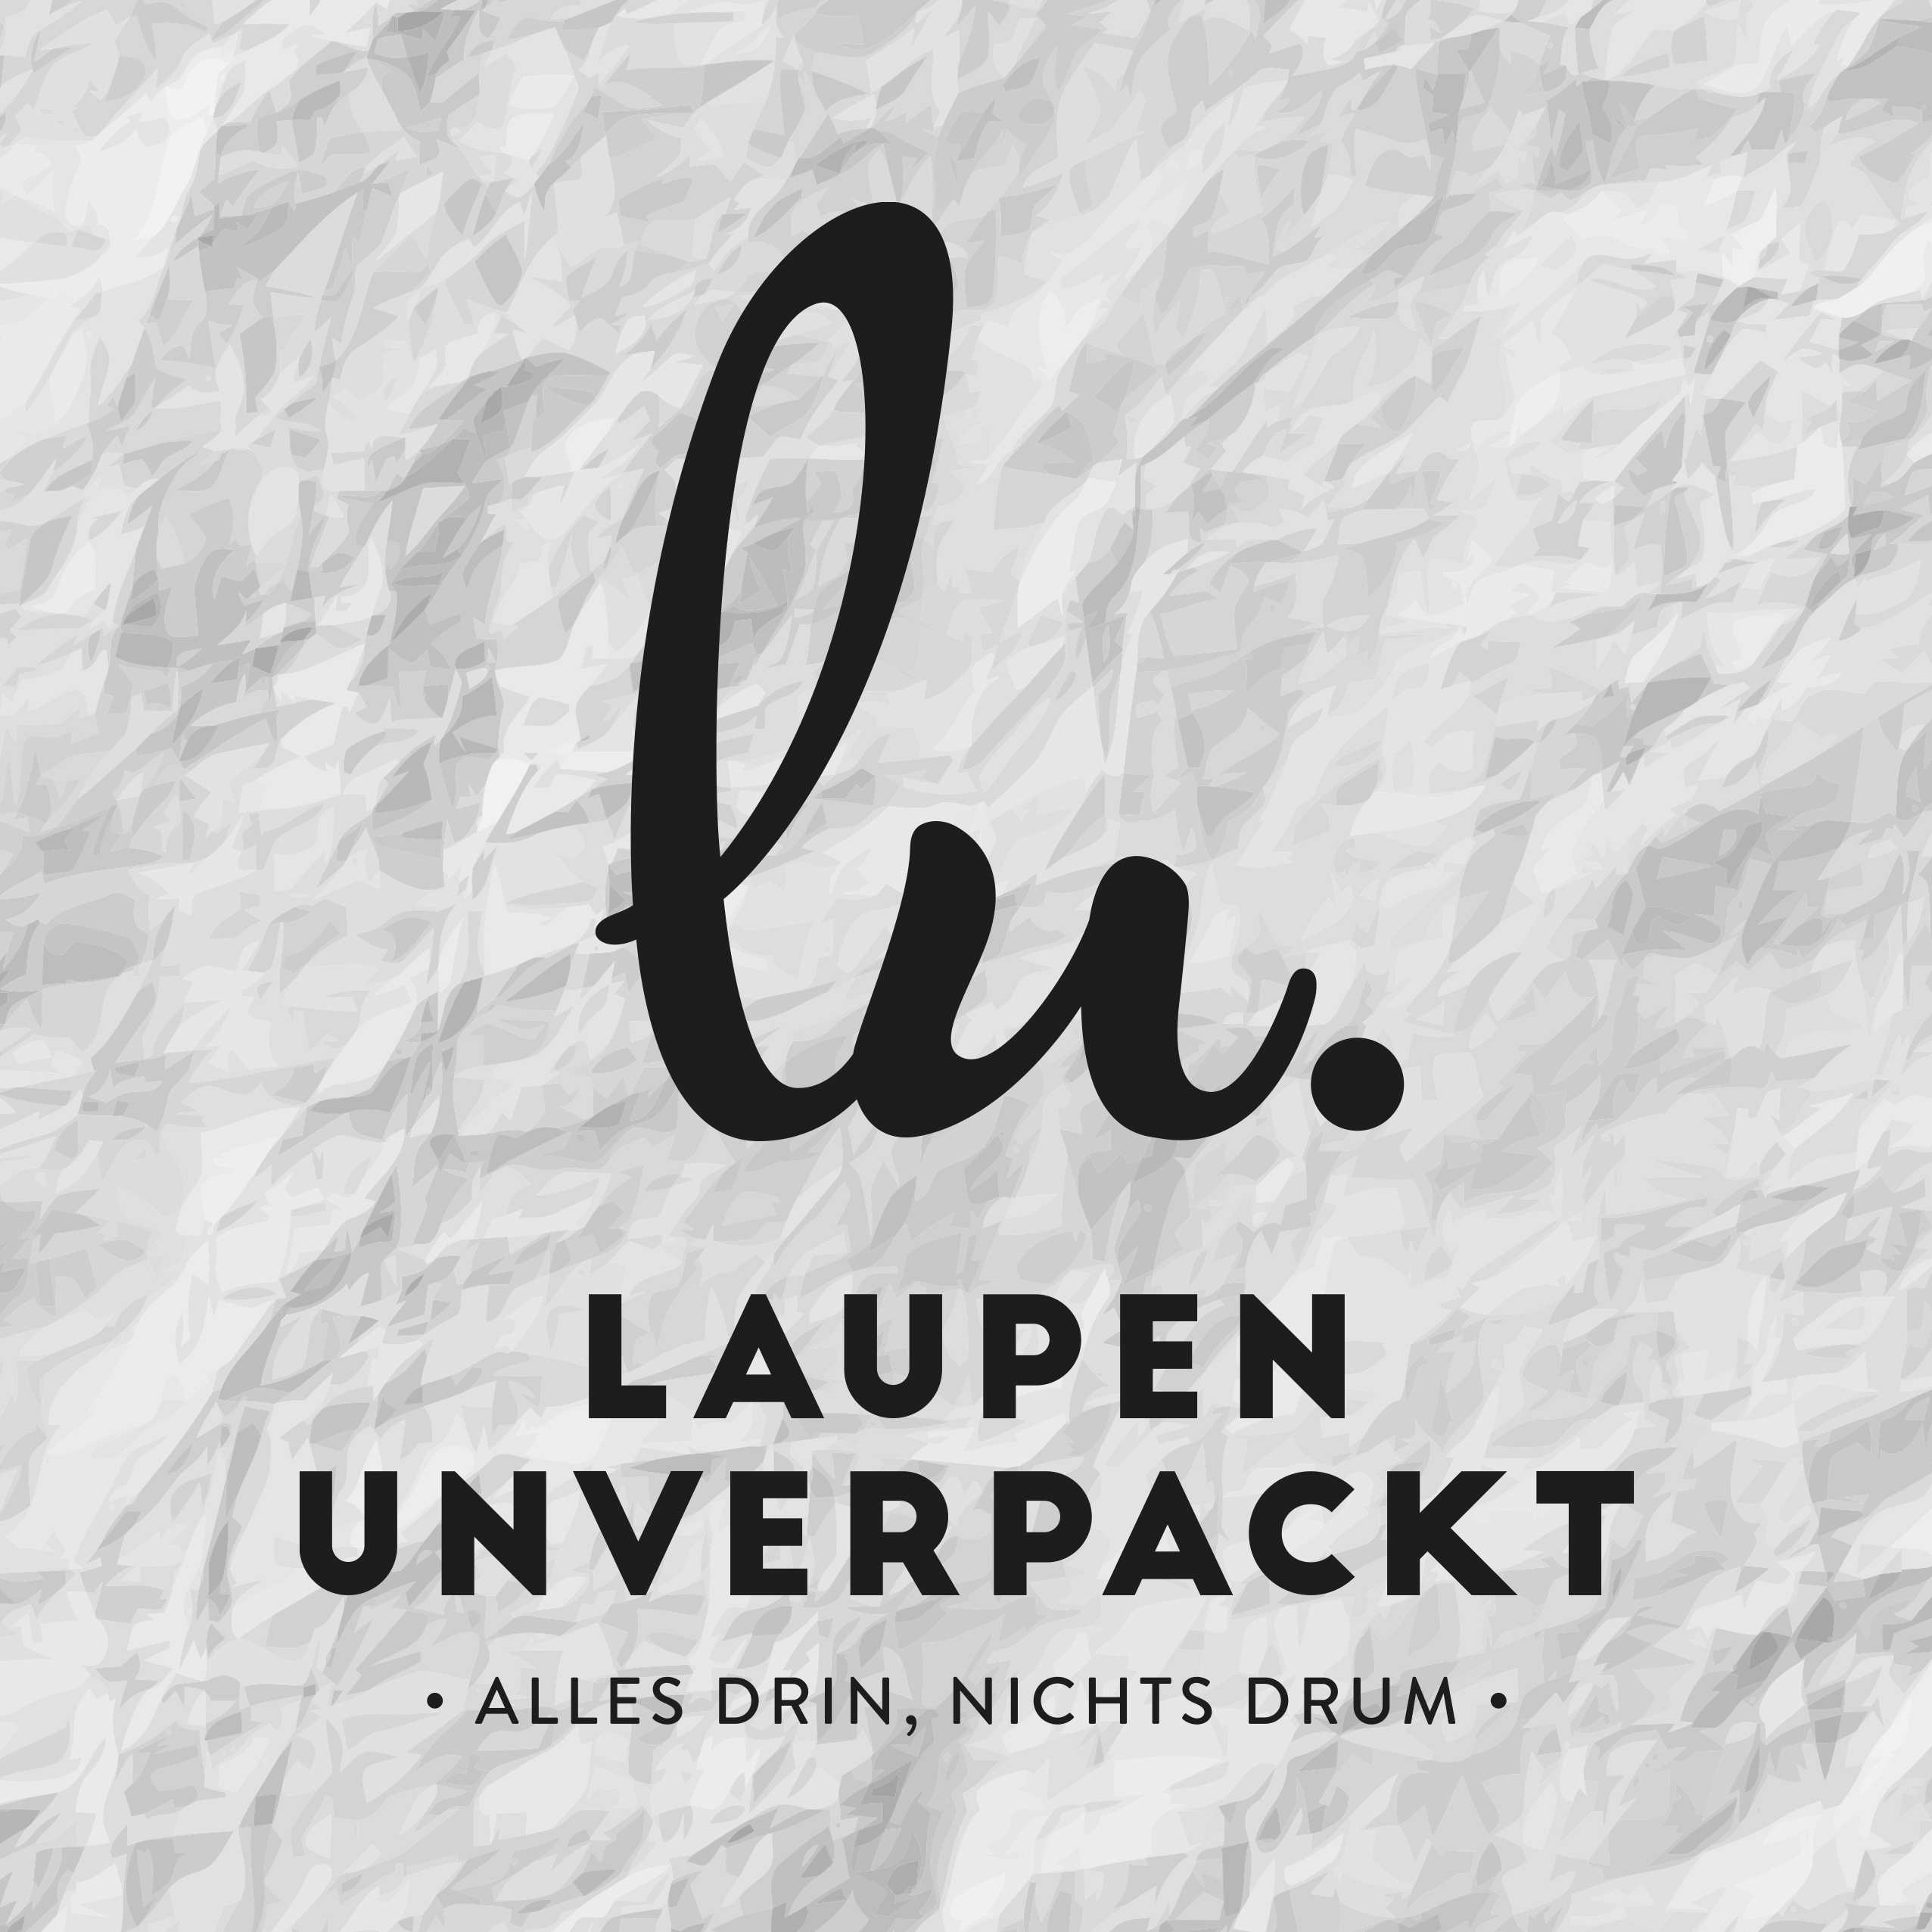 Laupen Unverpackt GmbH